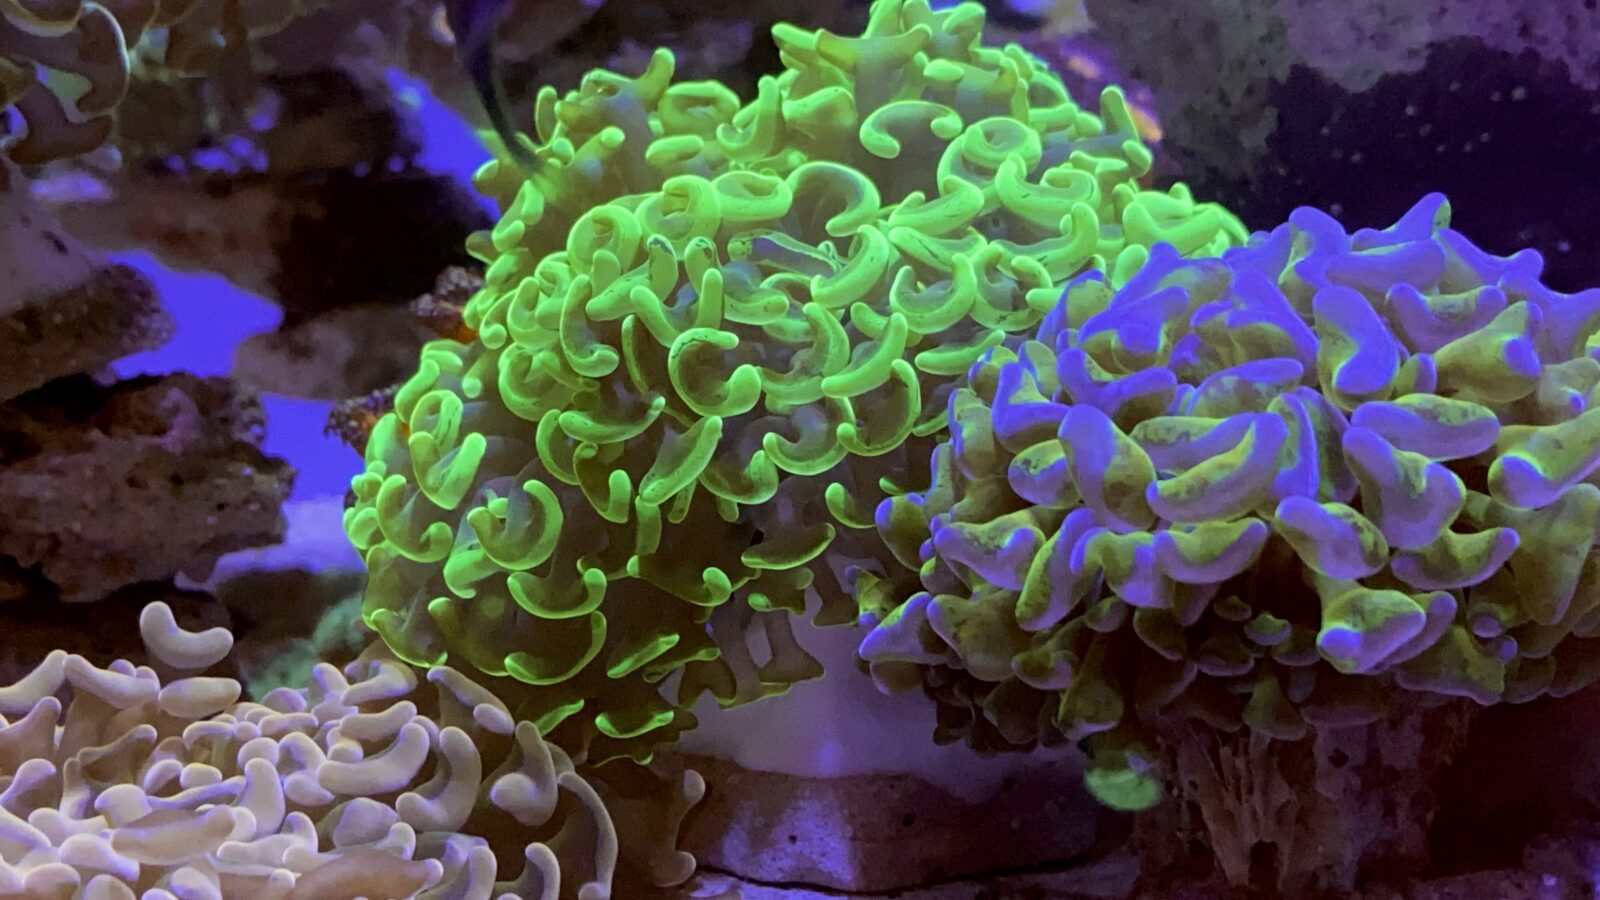 添加orphek珊瑚镜头滤镜后